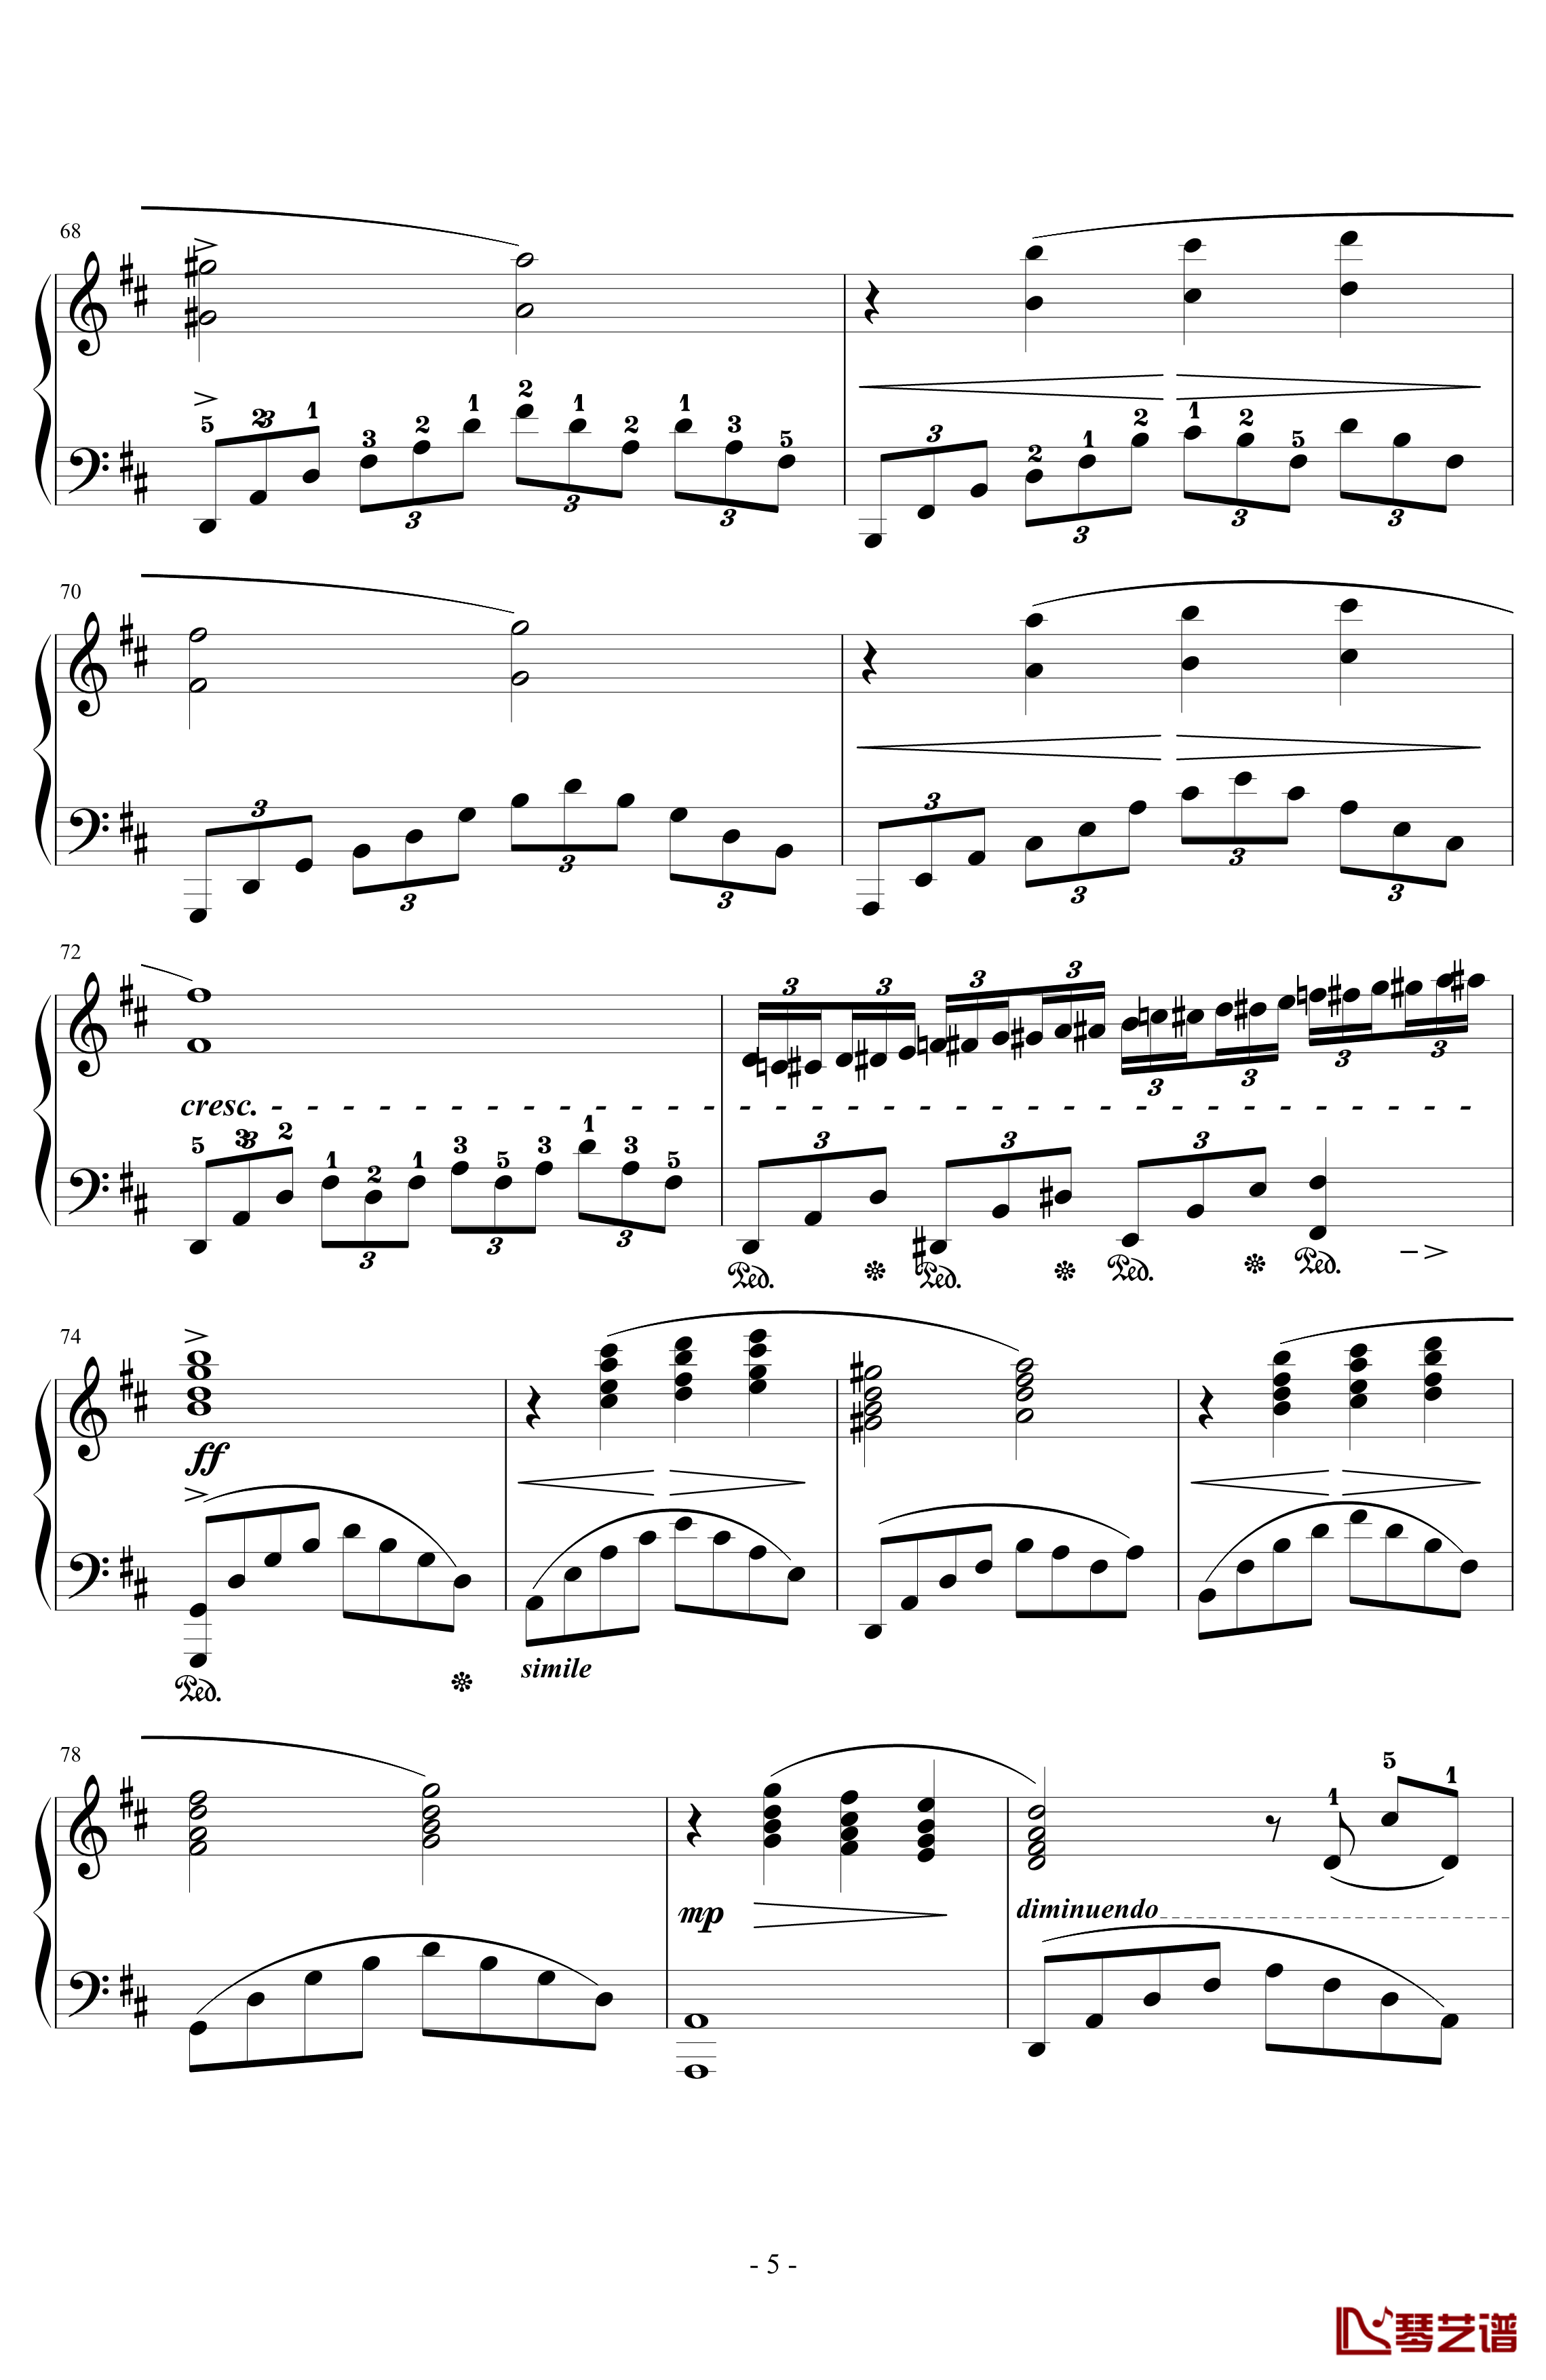 とどかぬ想い钢琴谱-from FF9 Orchestra Version-植松伸夫5